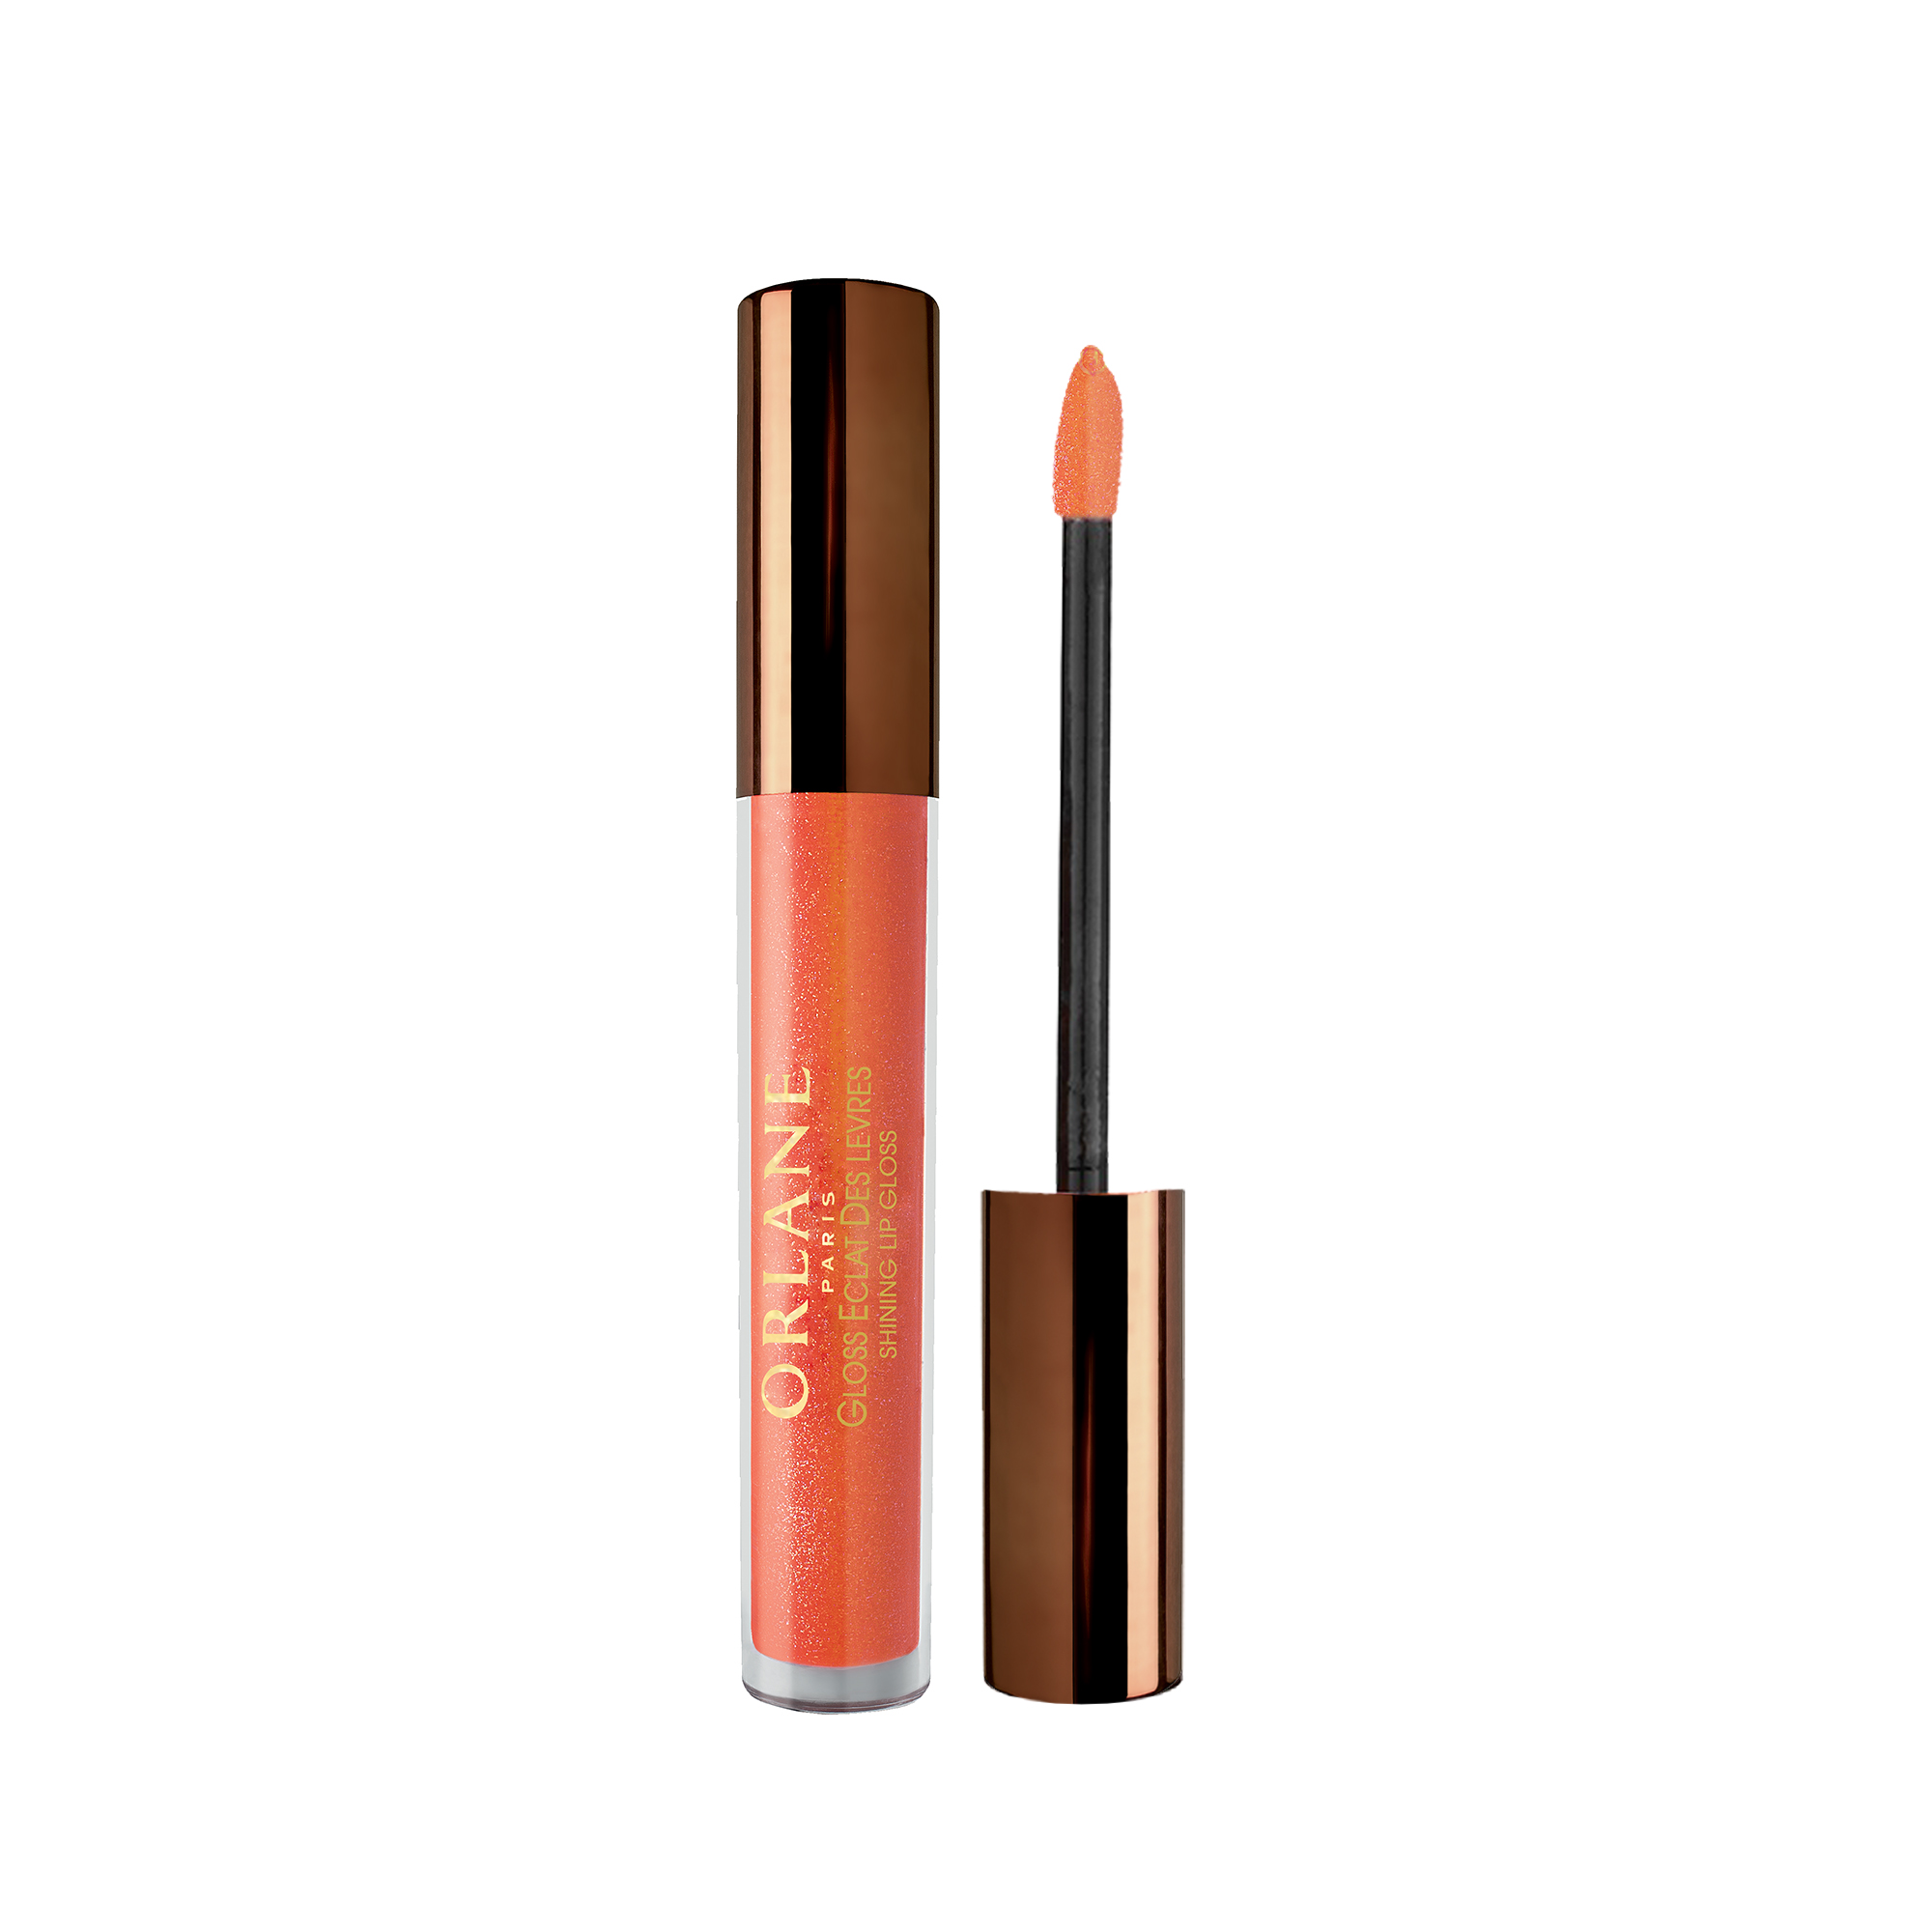 Son bóng Orlane có dưỡng môi 2 trong 1 #4 Orlane Shinning Lip Gloss #4 Orange 3ml